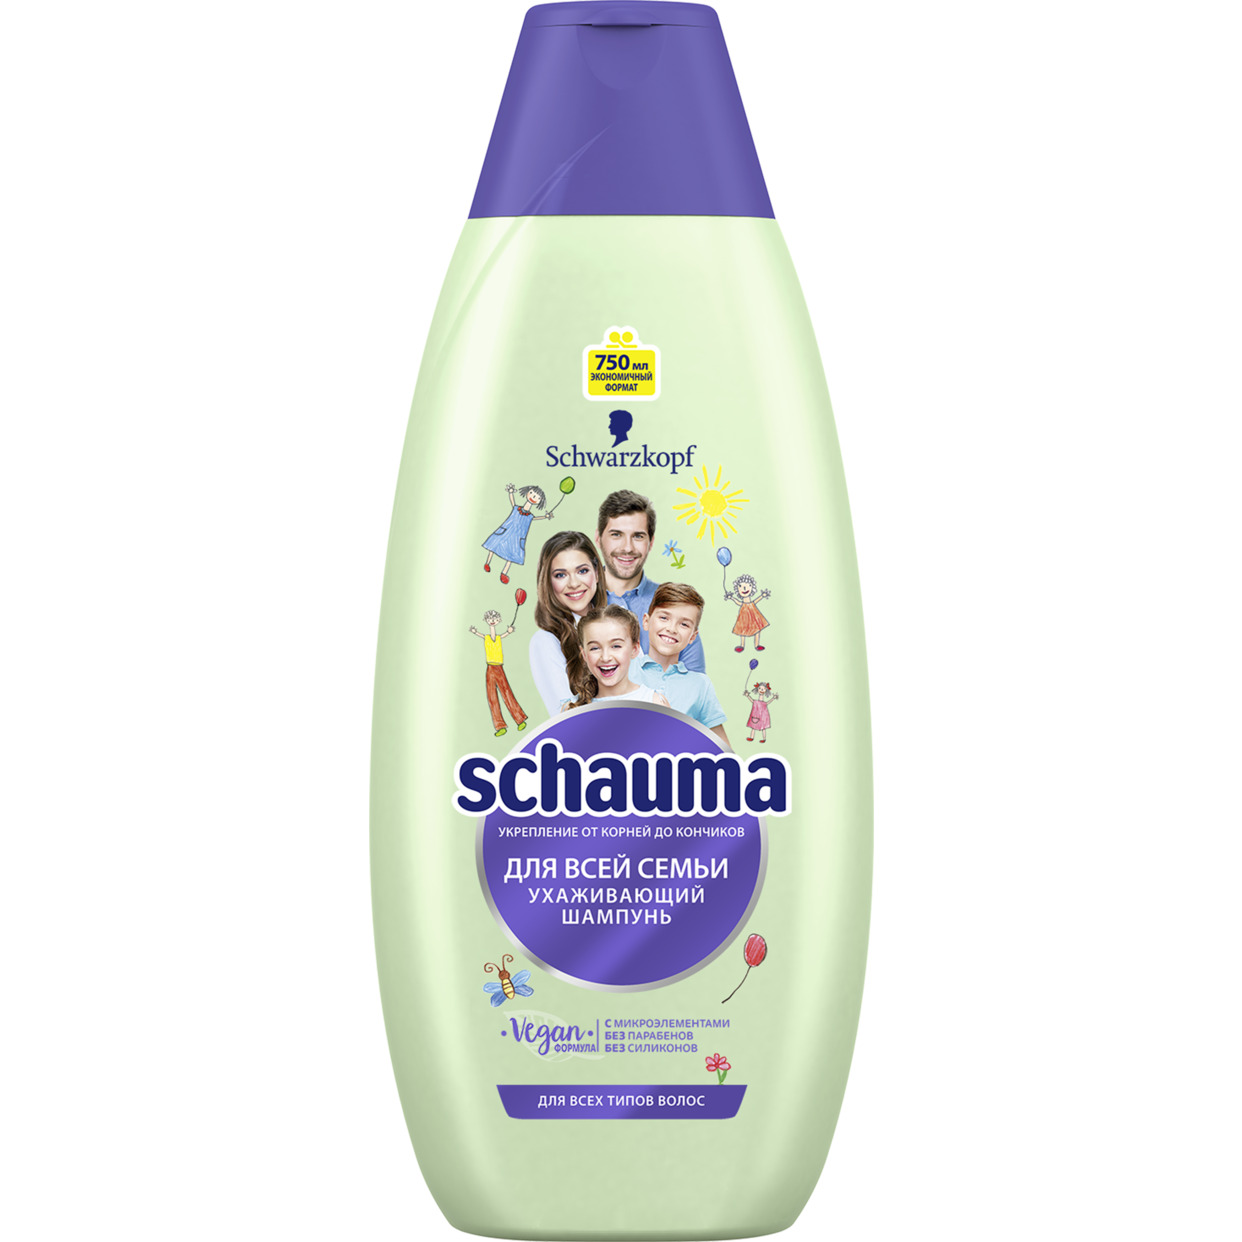 Шампунь для волос Schauma для всей семьи 750 мл по акции в Пятерочке